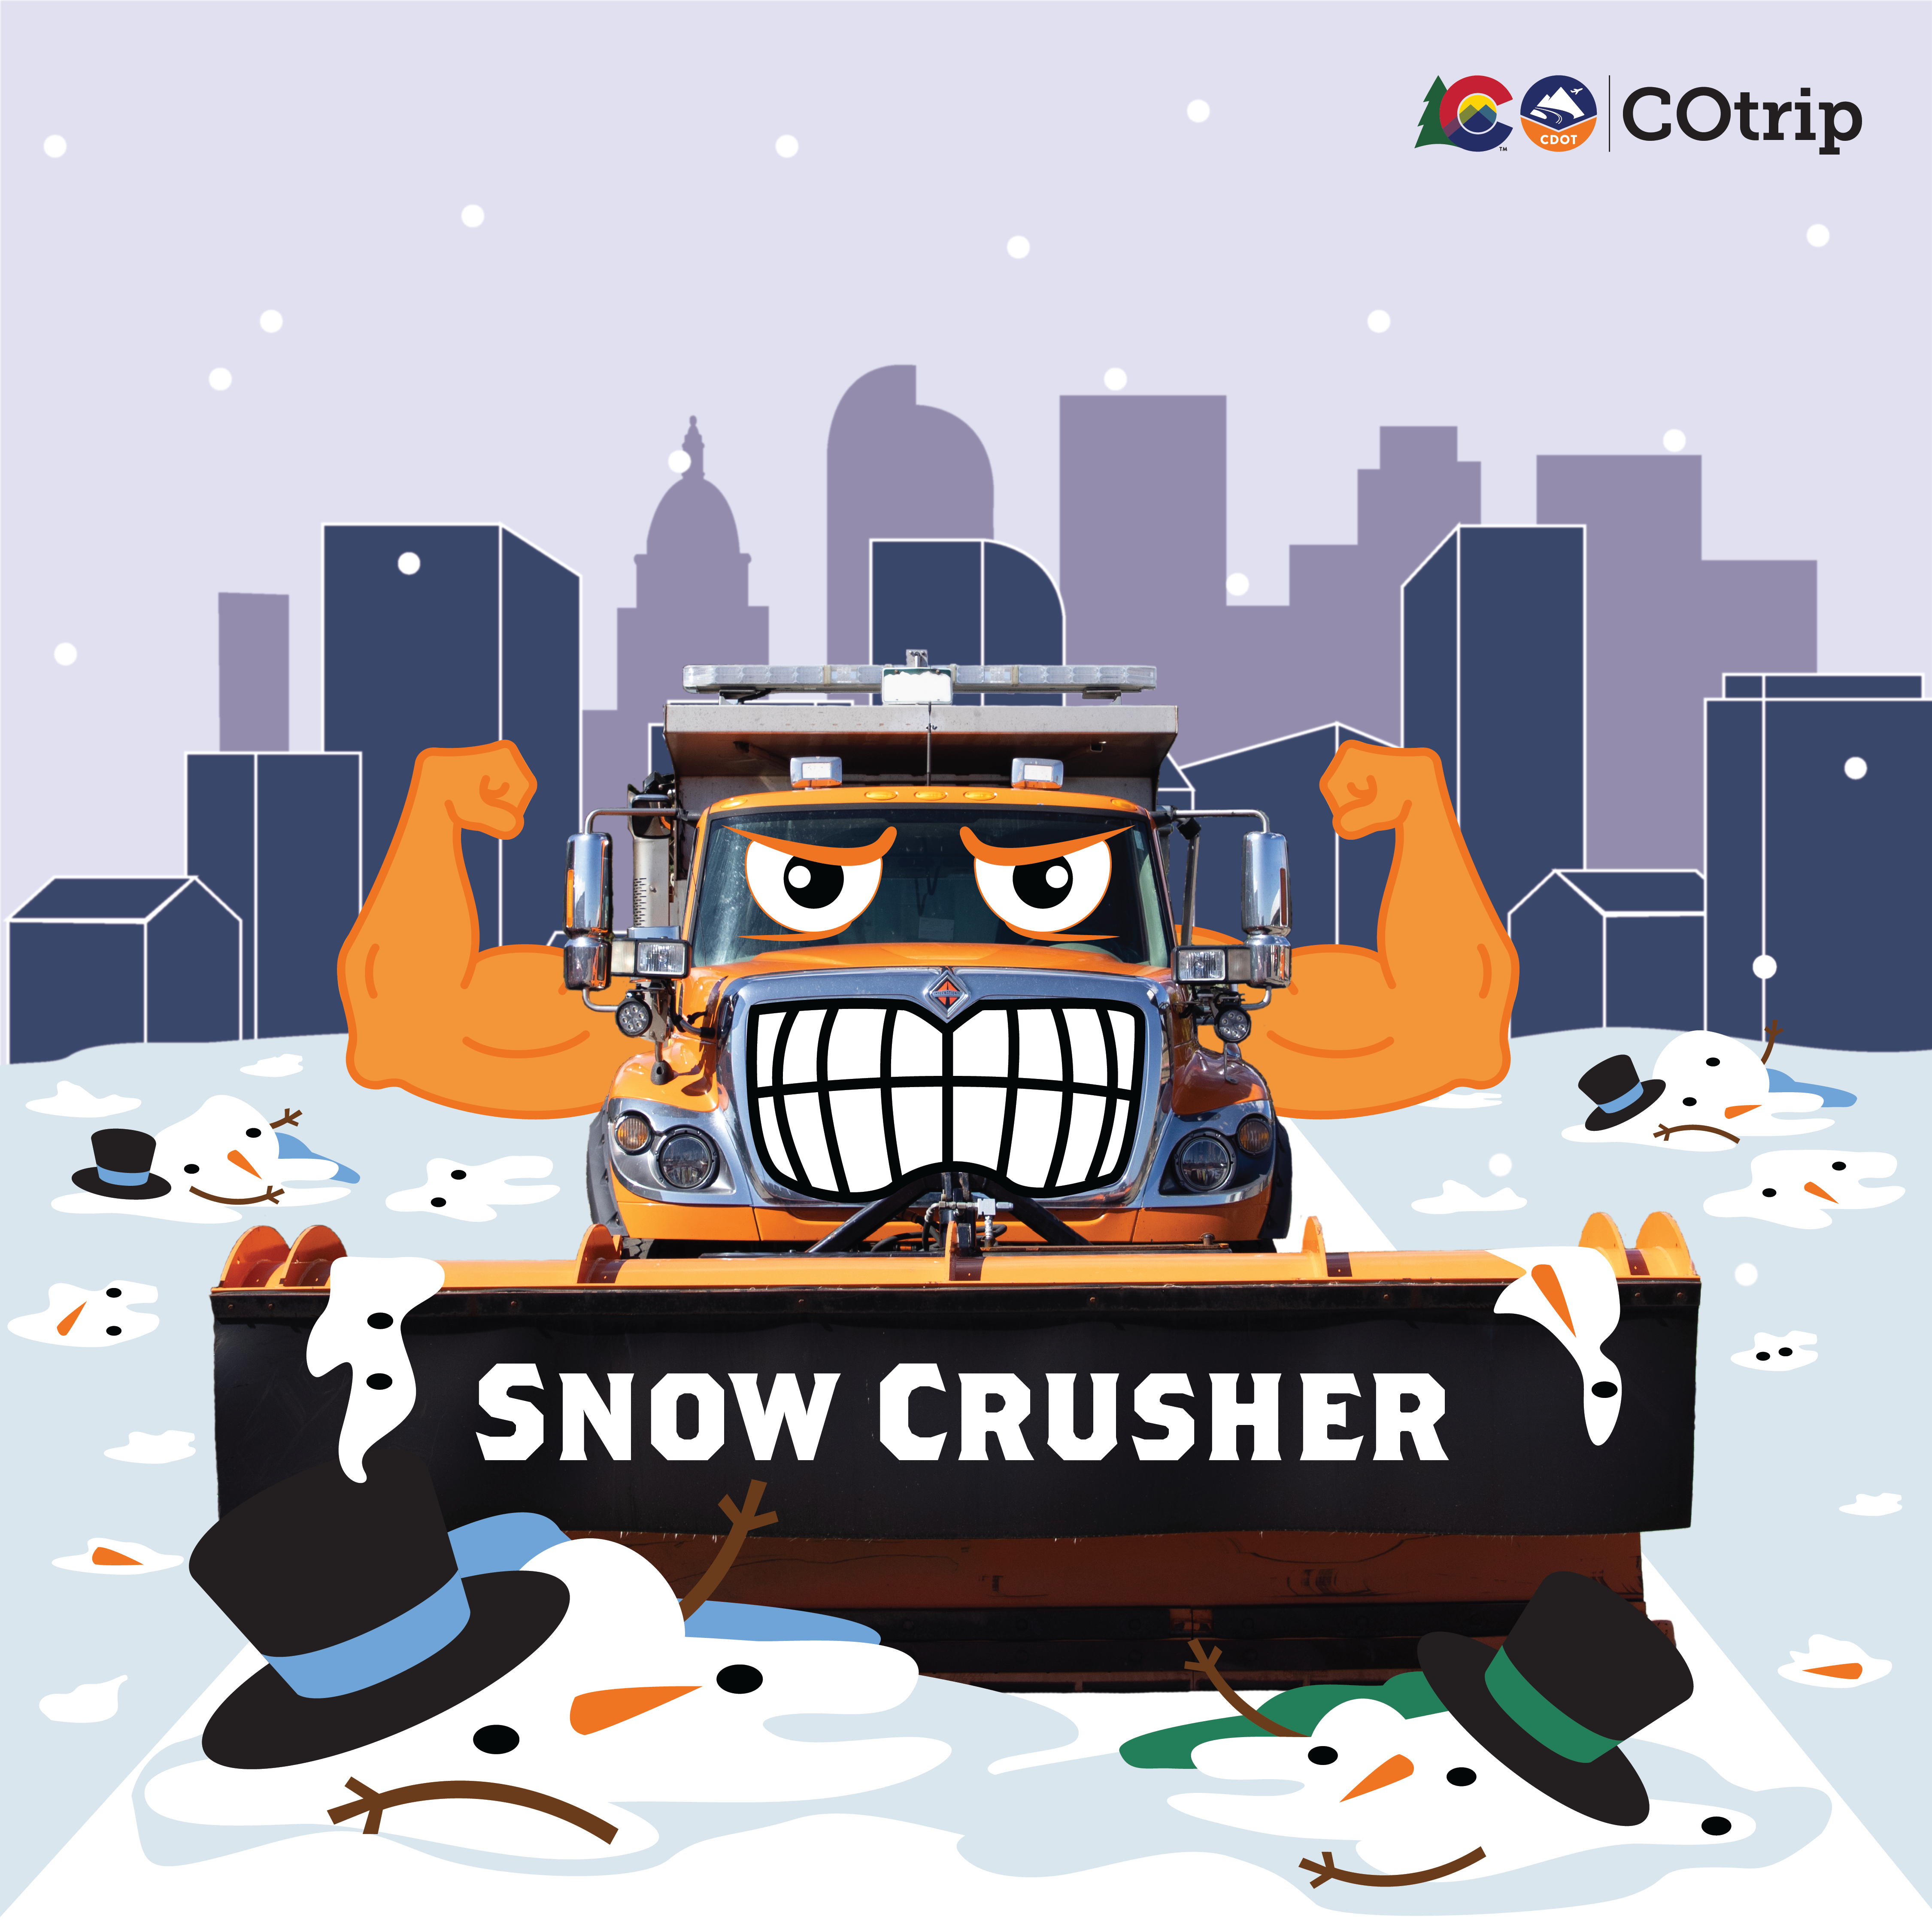 Snow Crusher Snowplow detail image